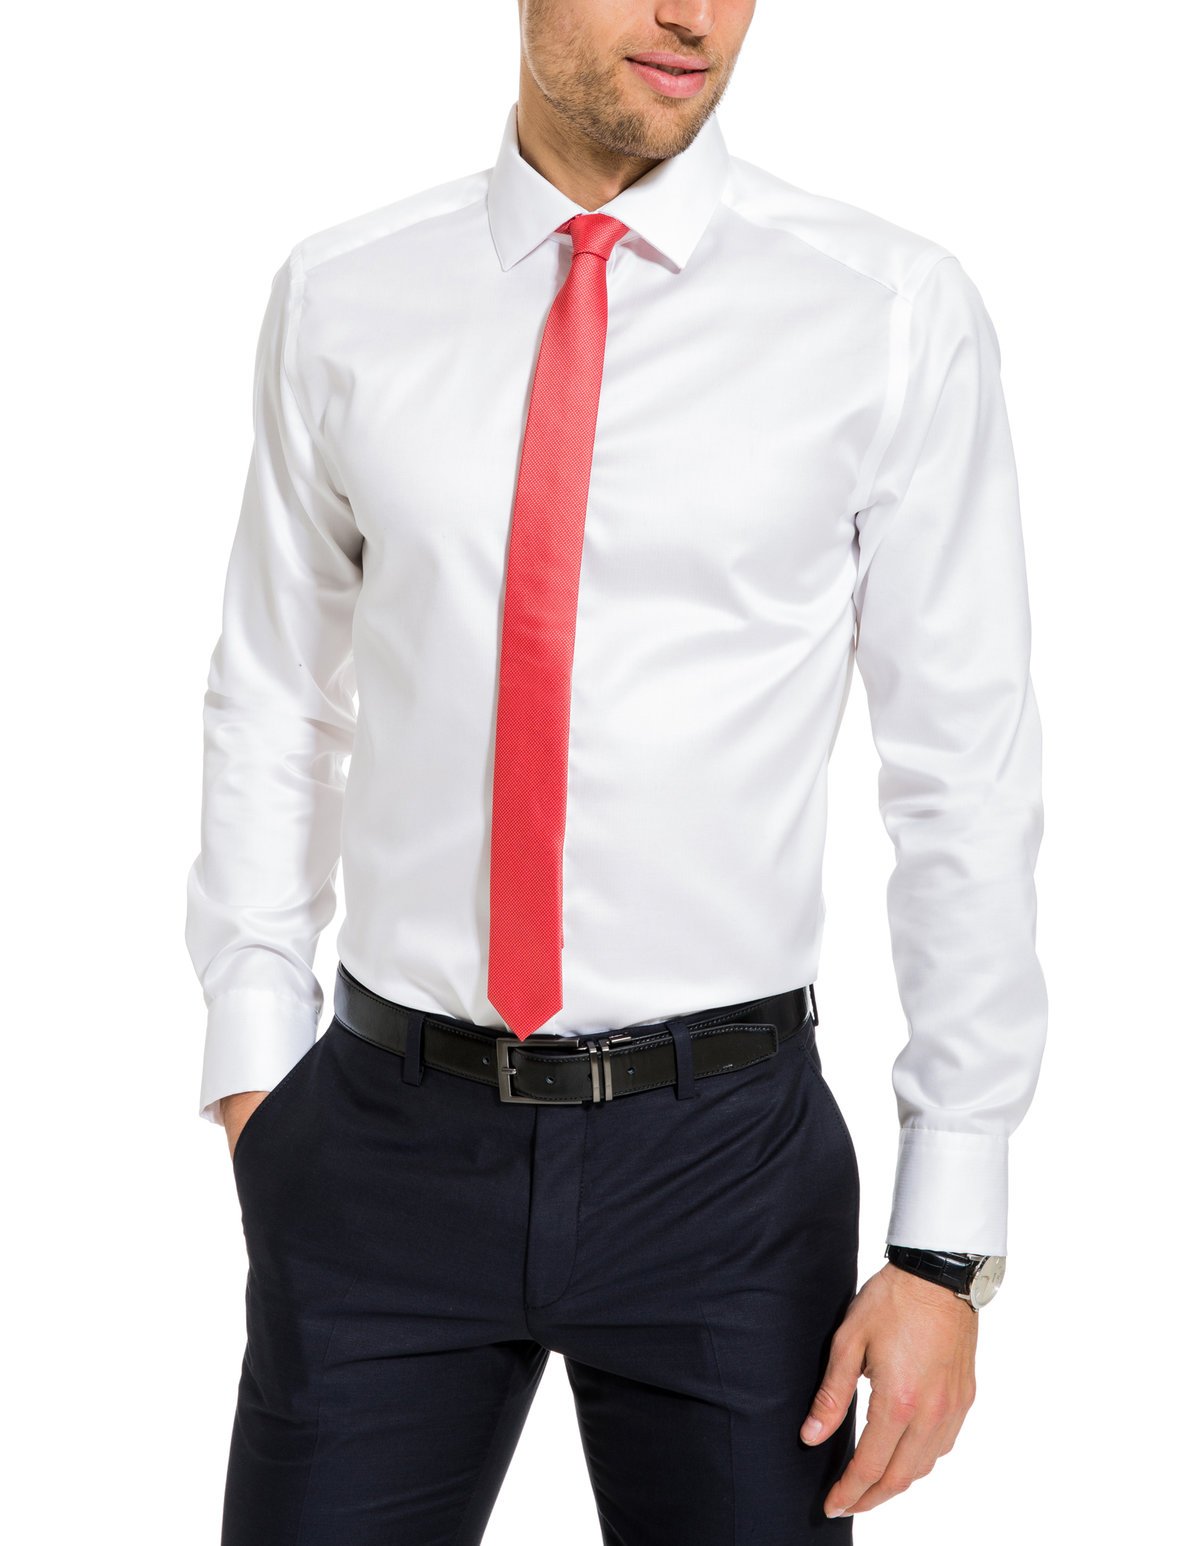 Чёрная рубашка с белым галстуком